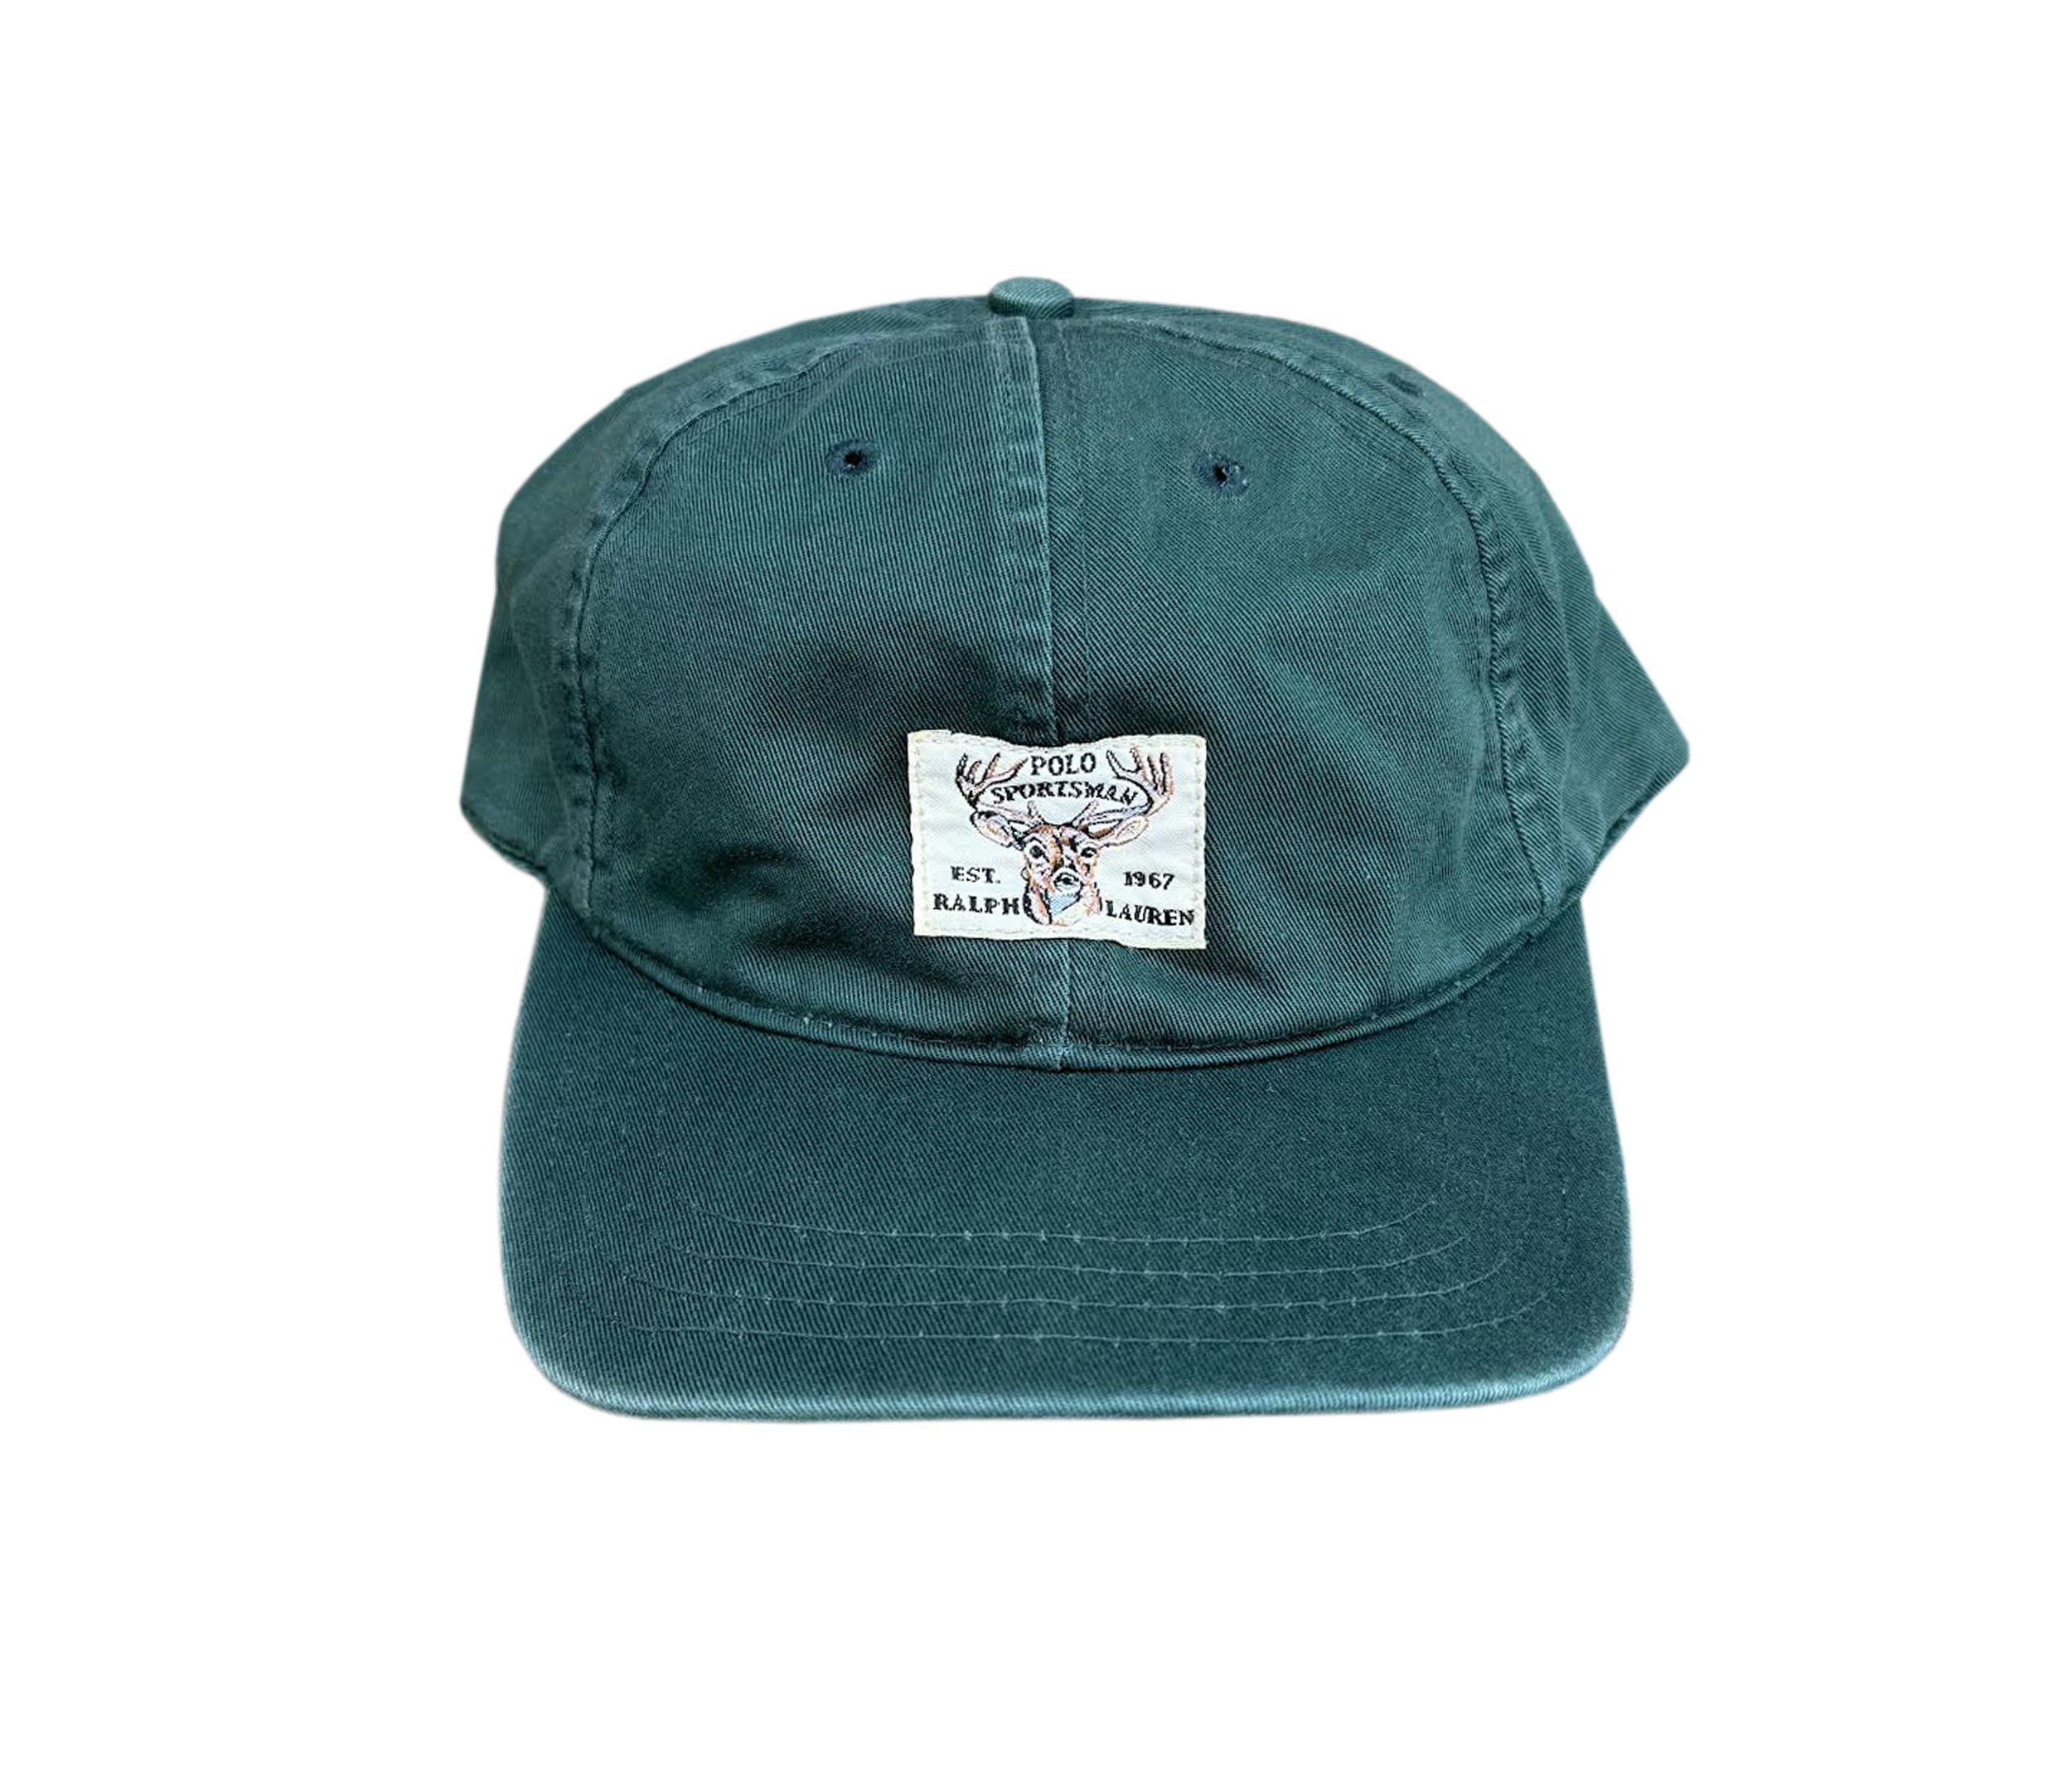 Polo+Sport+Forest+green+Sportsman+hat.jpg